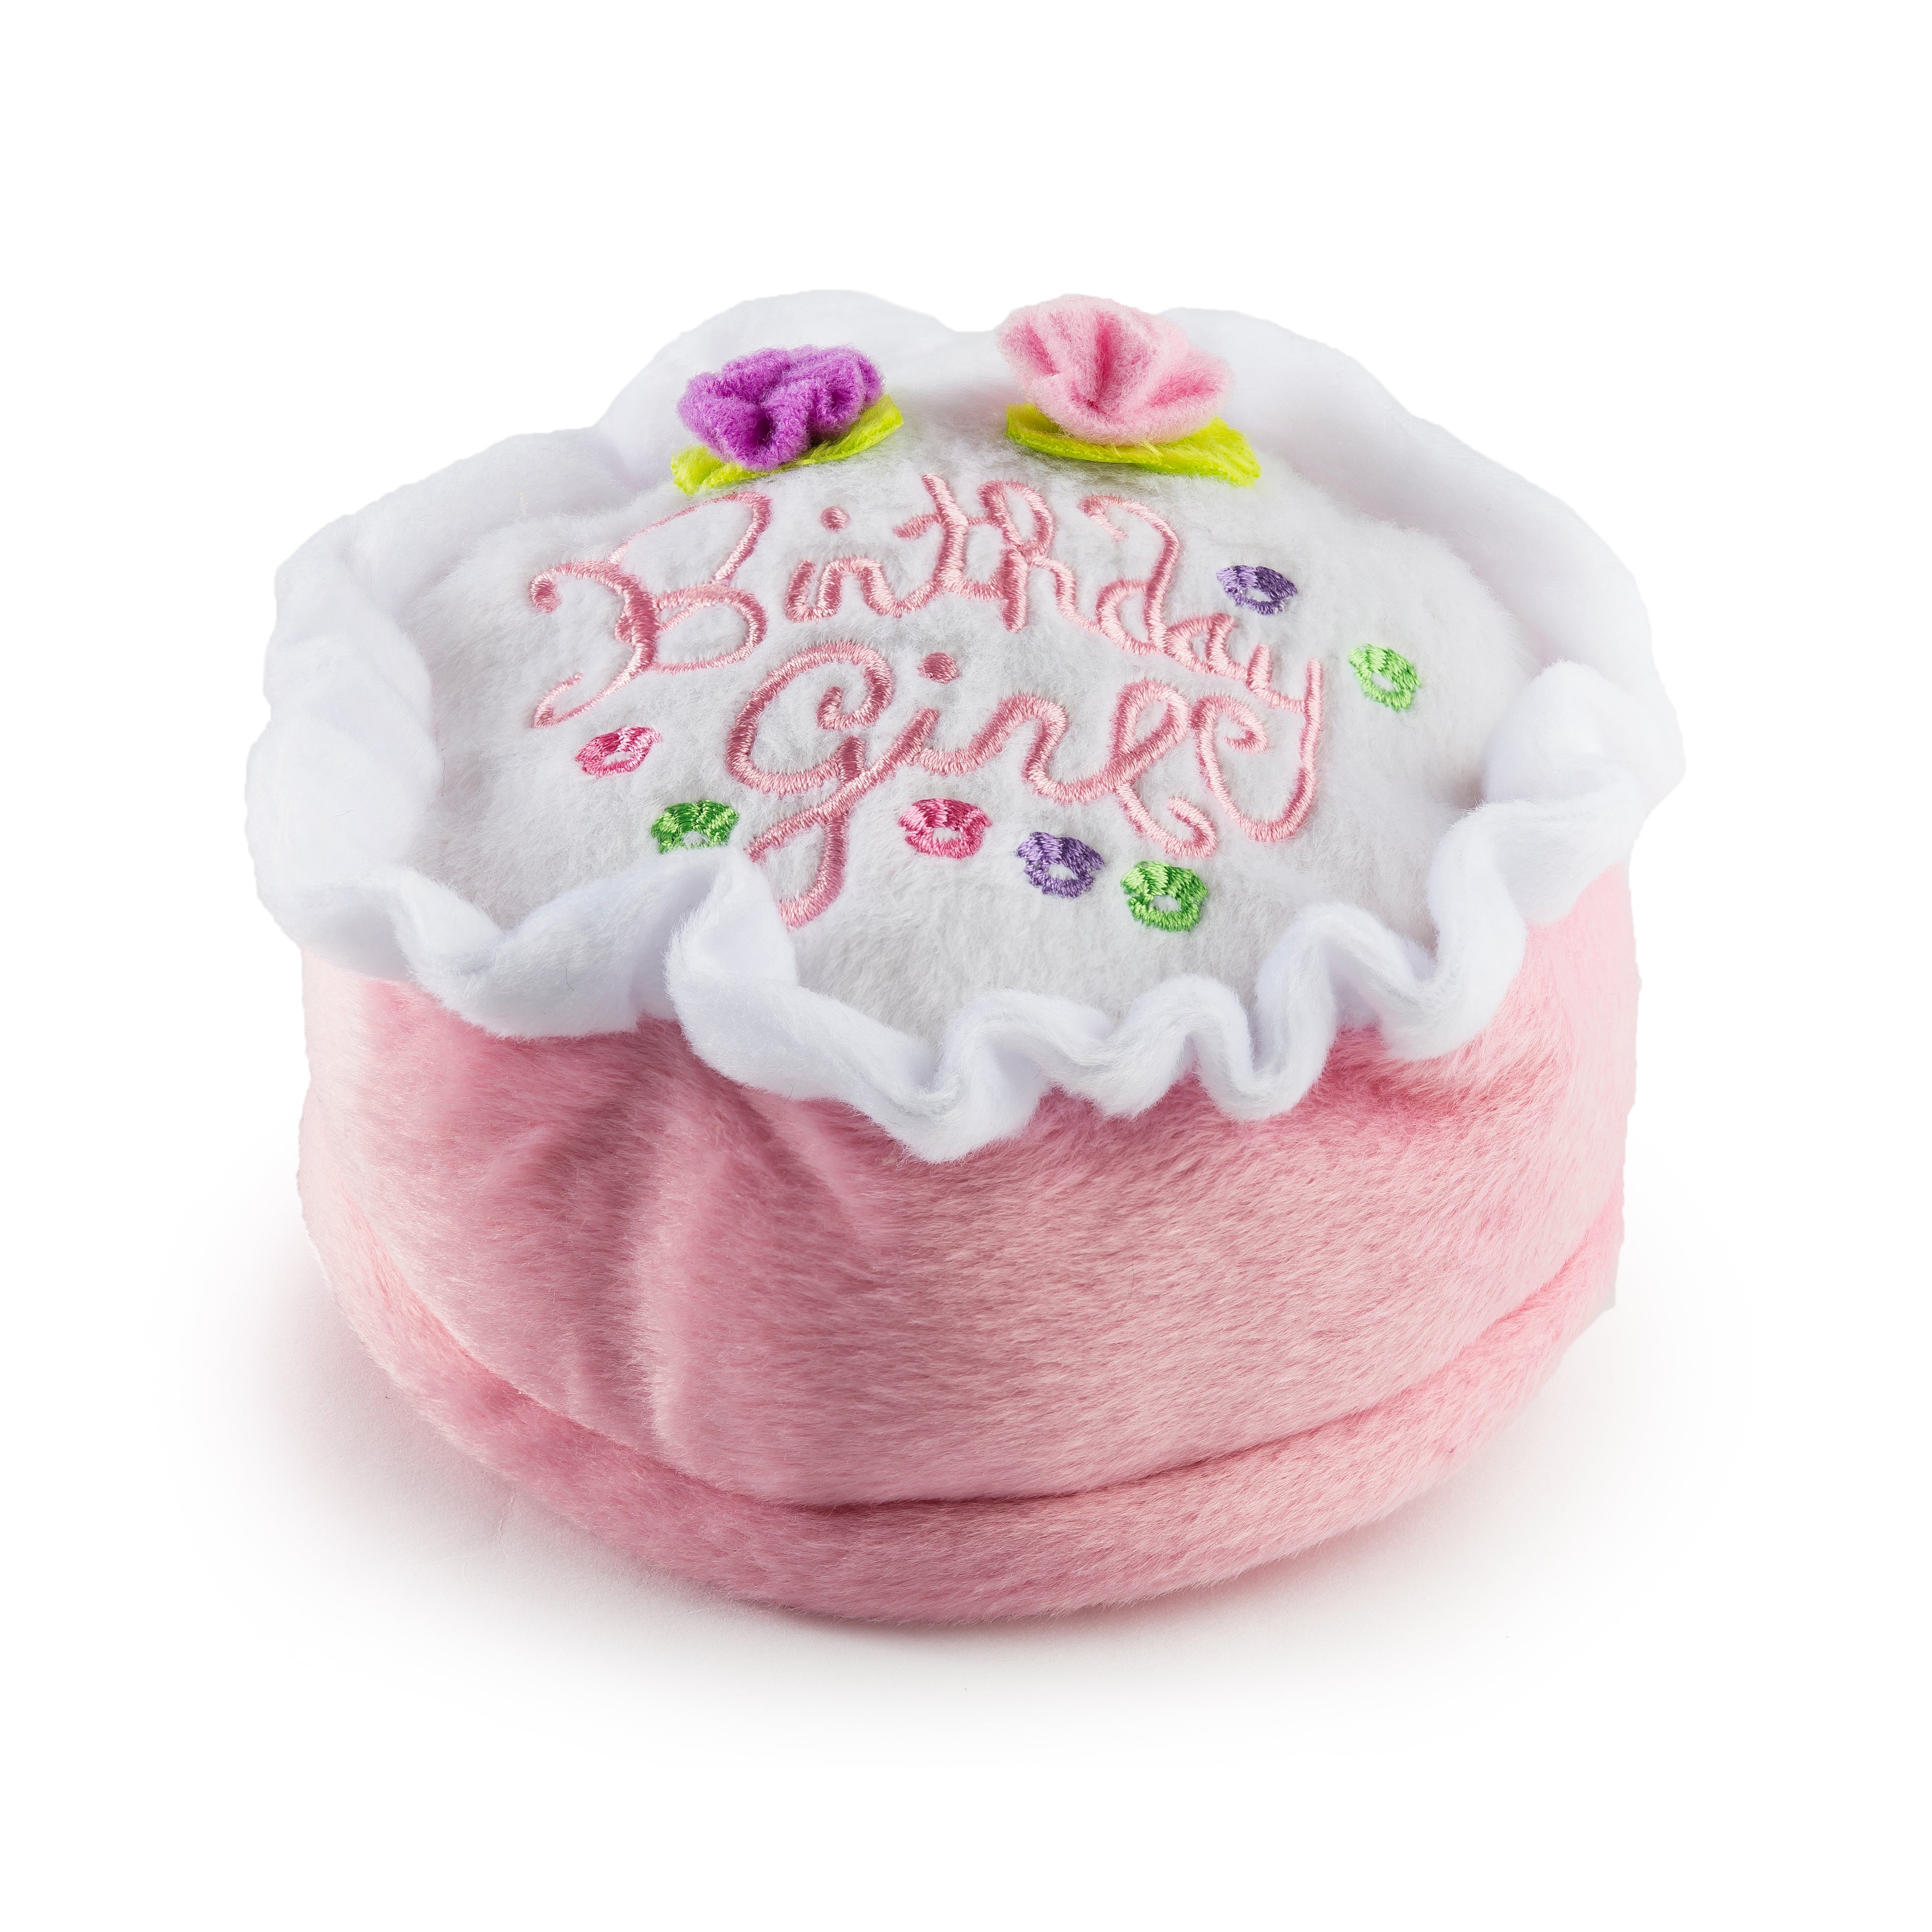 Haute Diggity Dog -  Birthday Girl Cake